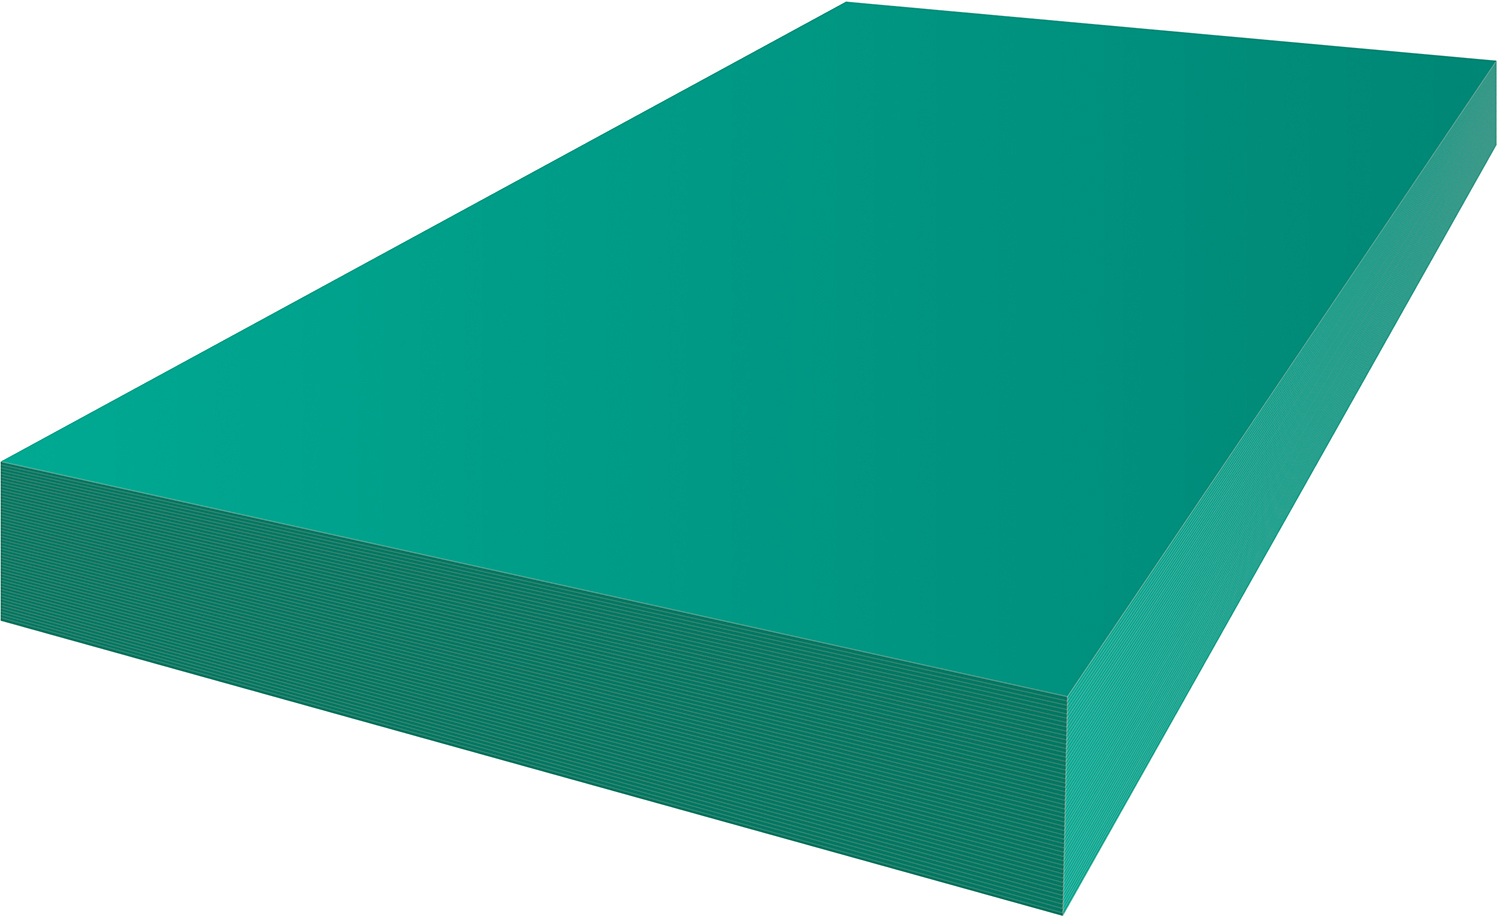 AURORA Papier à dessin A3 29,7x42/T100 turquoise, 120g 100 flls. turquoise, 120g 100 flls.